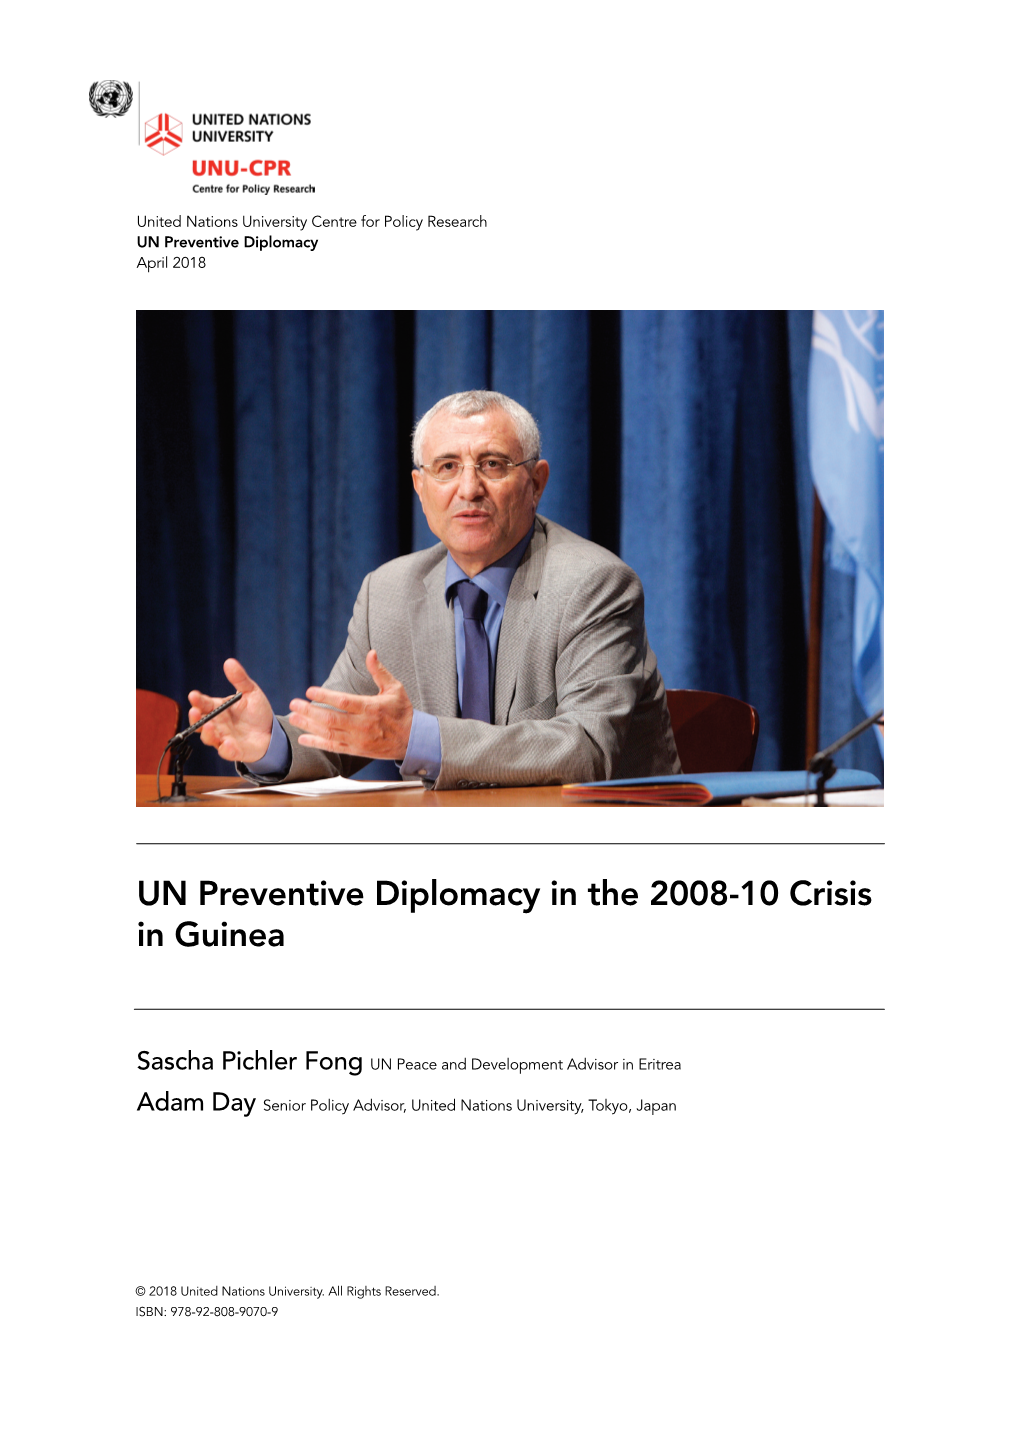 UN Preventive Diplomacy in the 2008-10 Crisis in Guinea